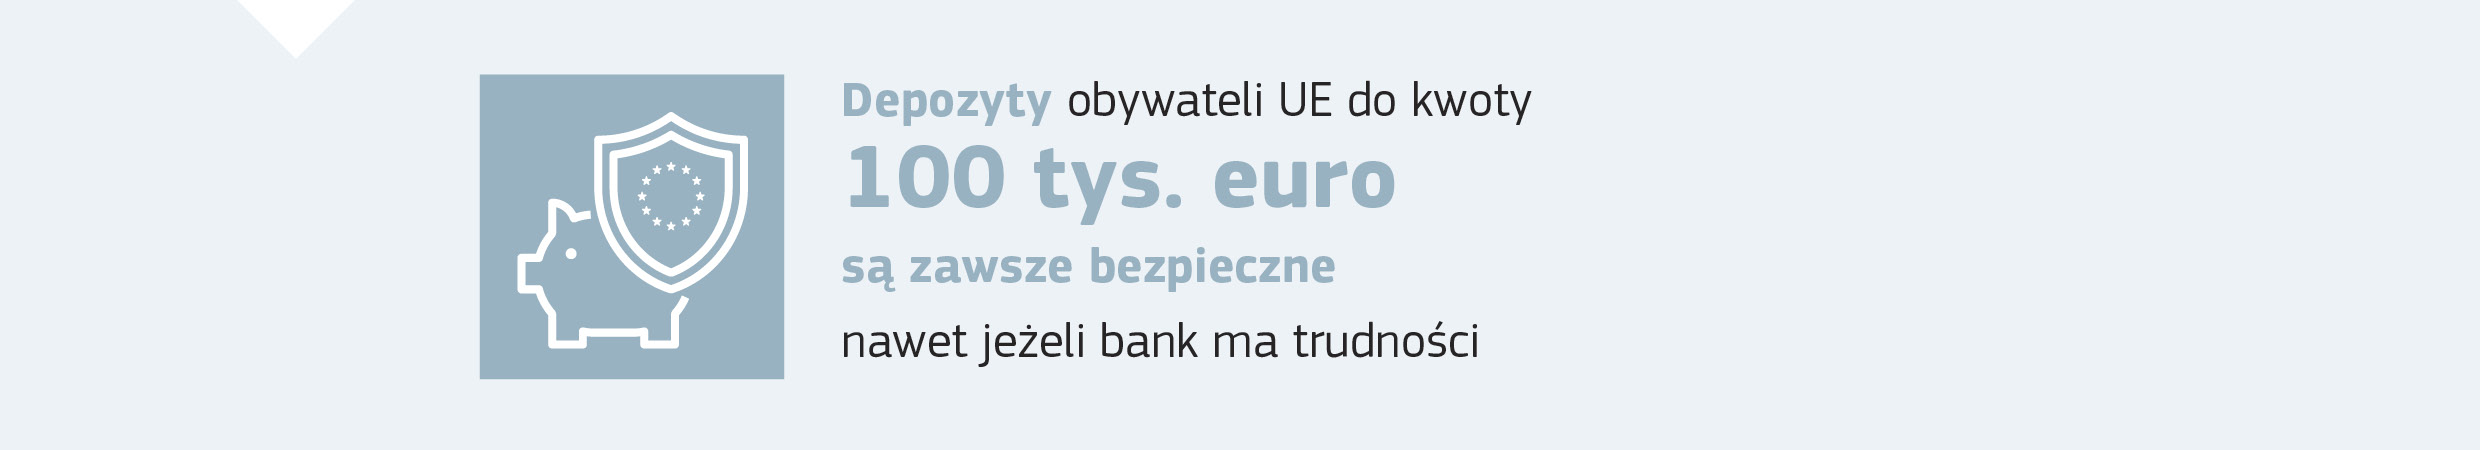 Depozyty obywateli UE do kwoty 100 tys. euro są zawsze bezpieczne, nawet jeżeli bank ma trudności